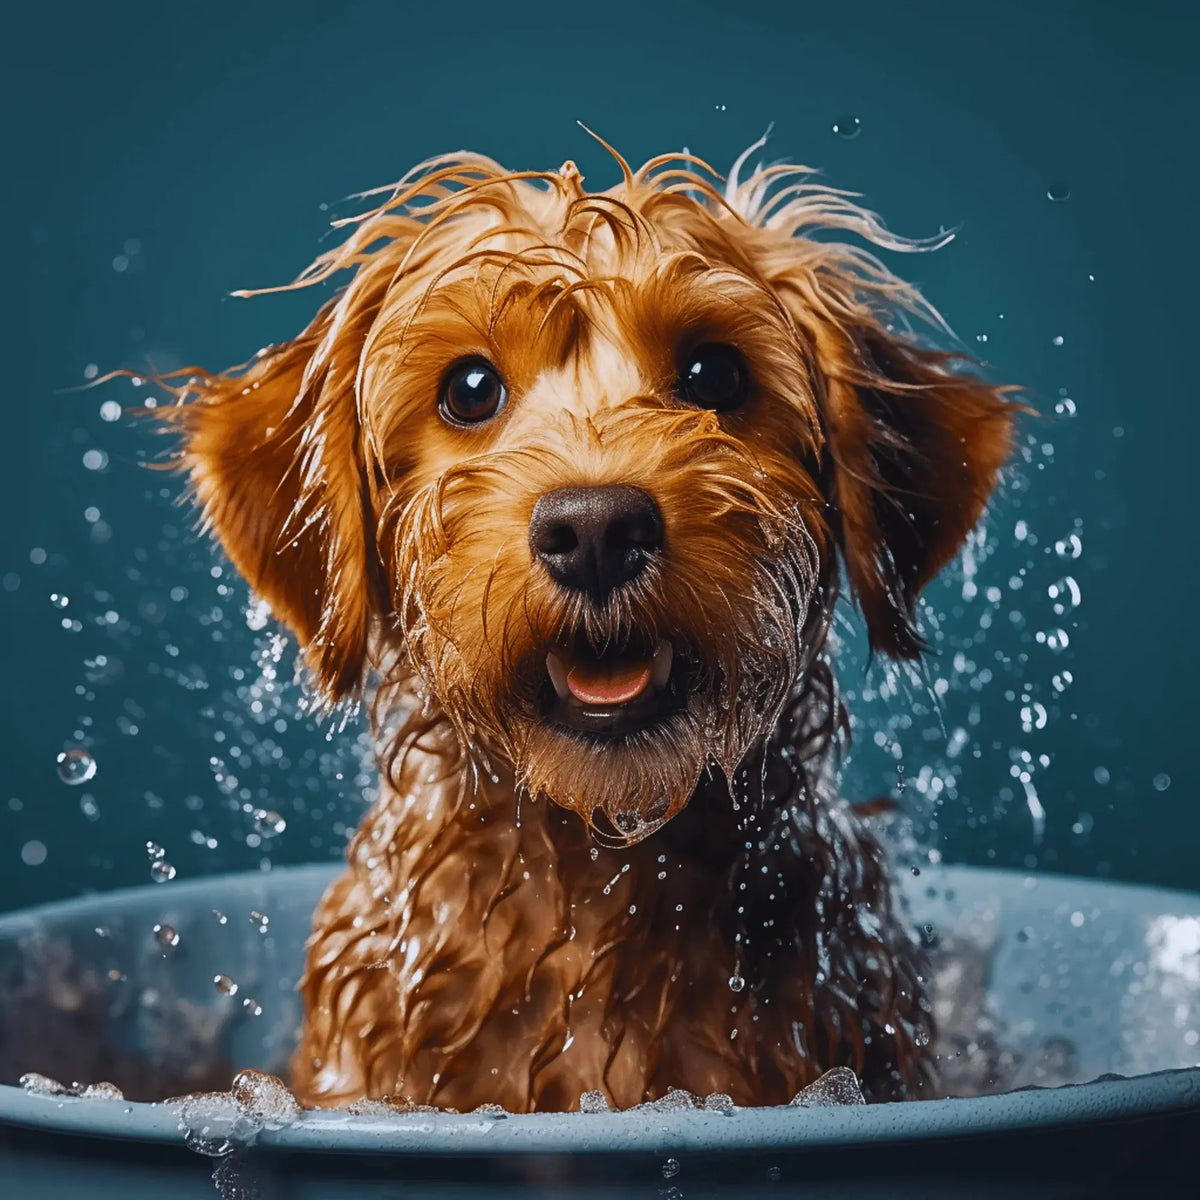 Cute Dog in a Bath